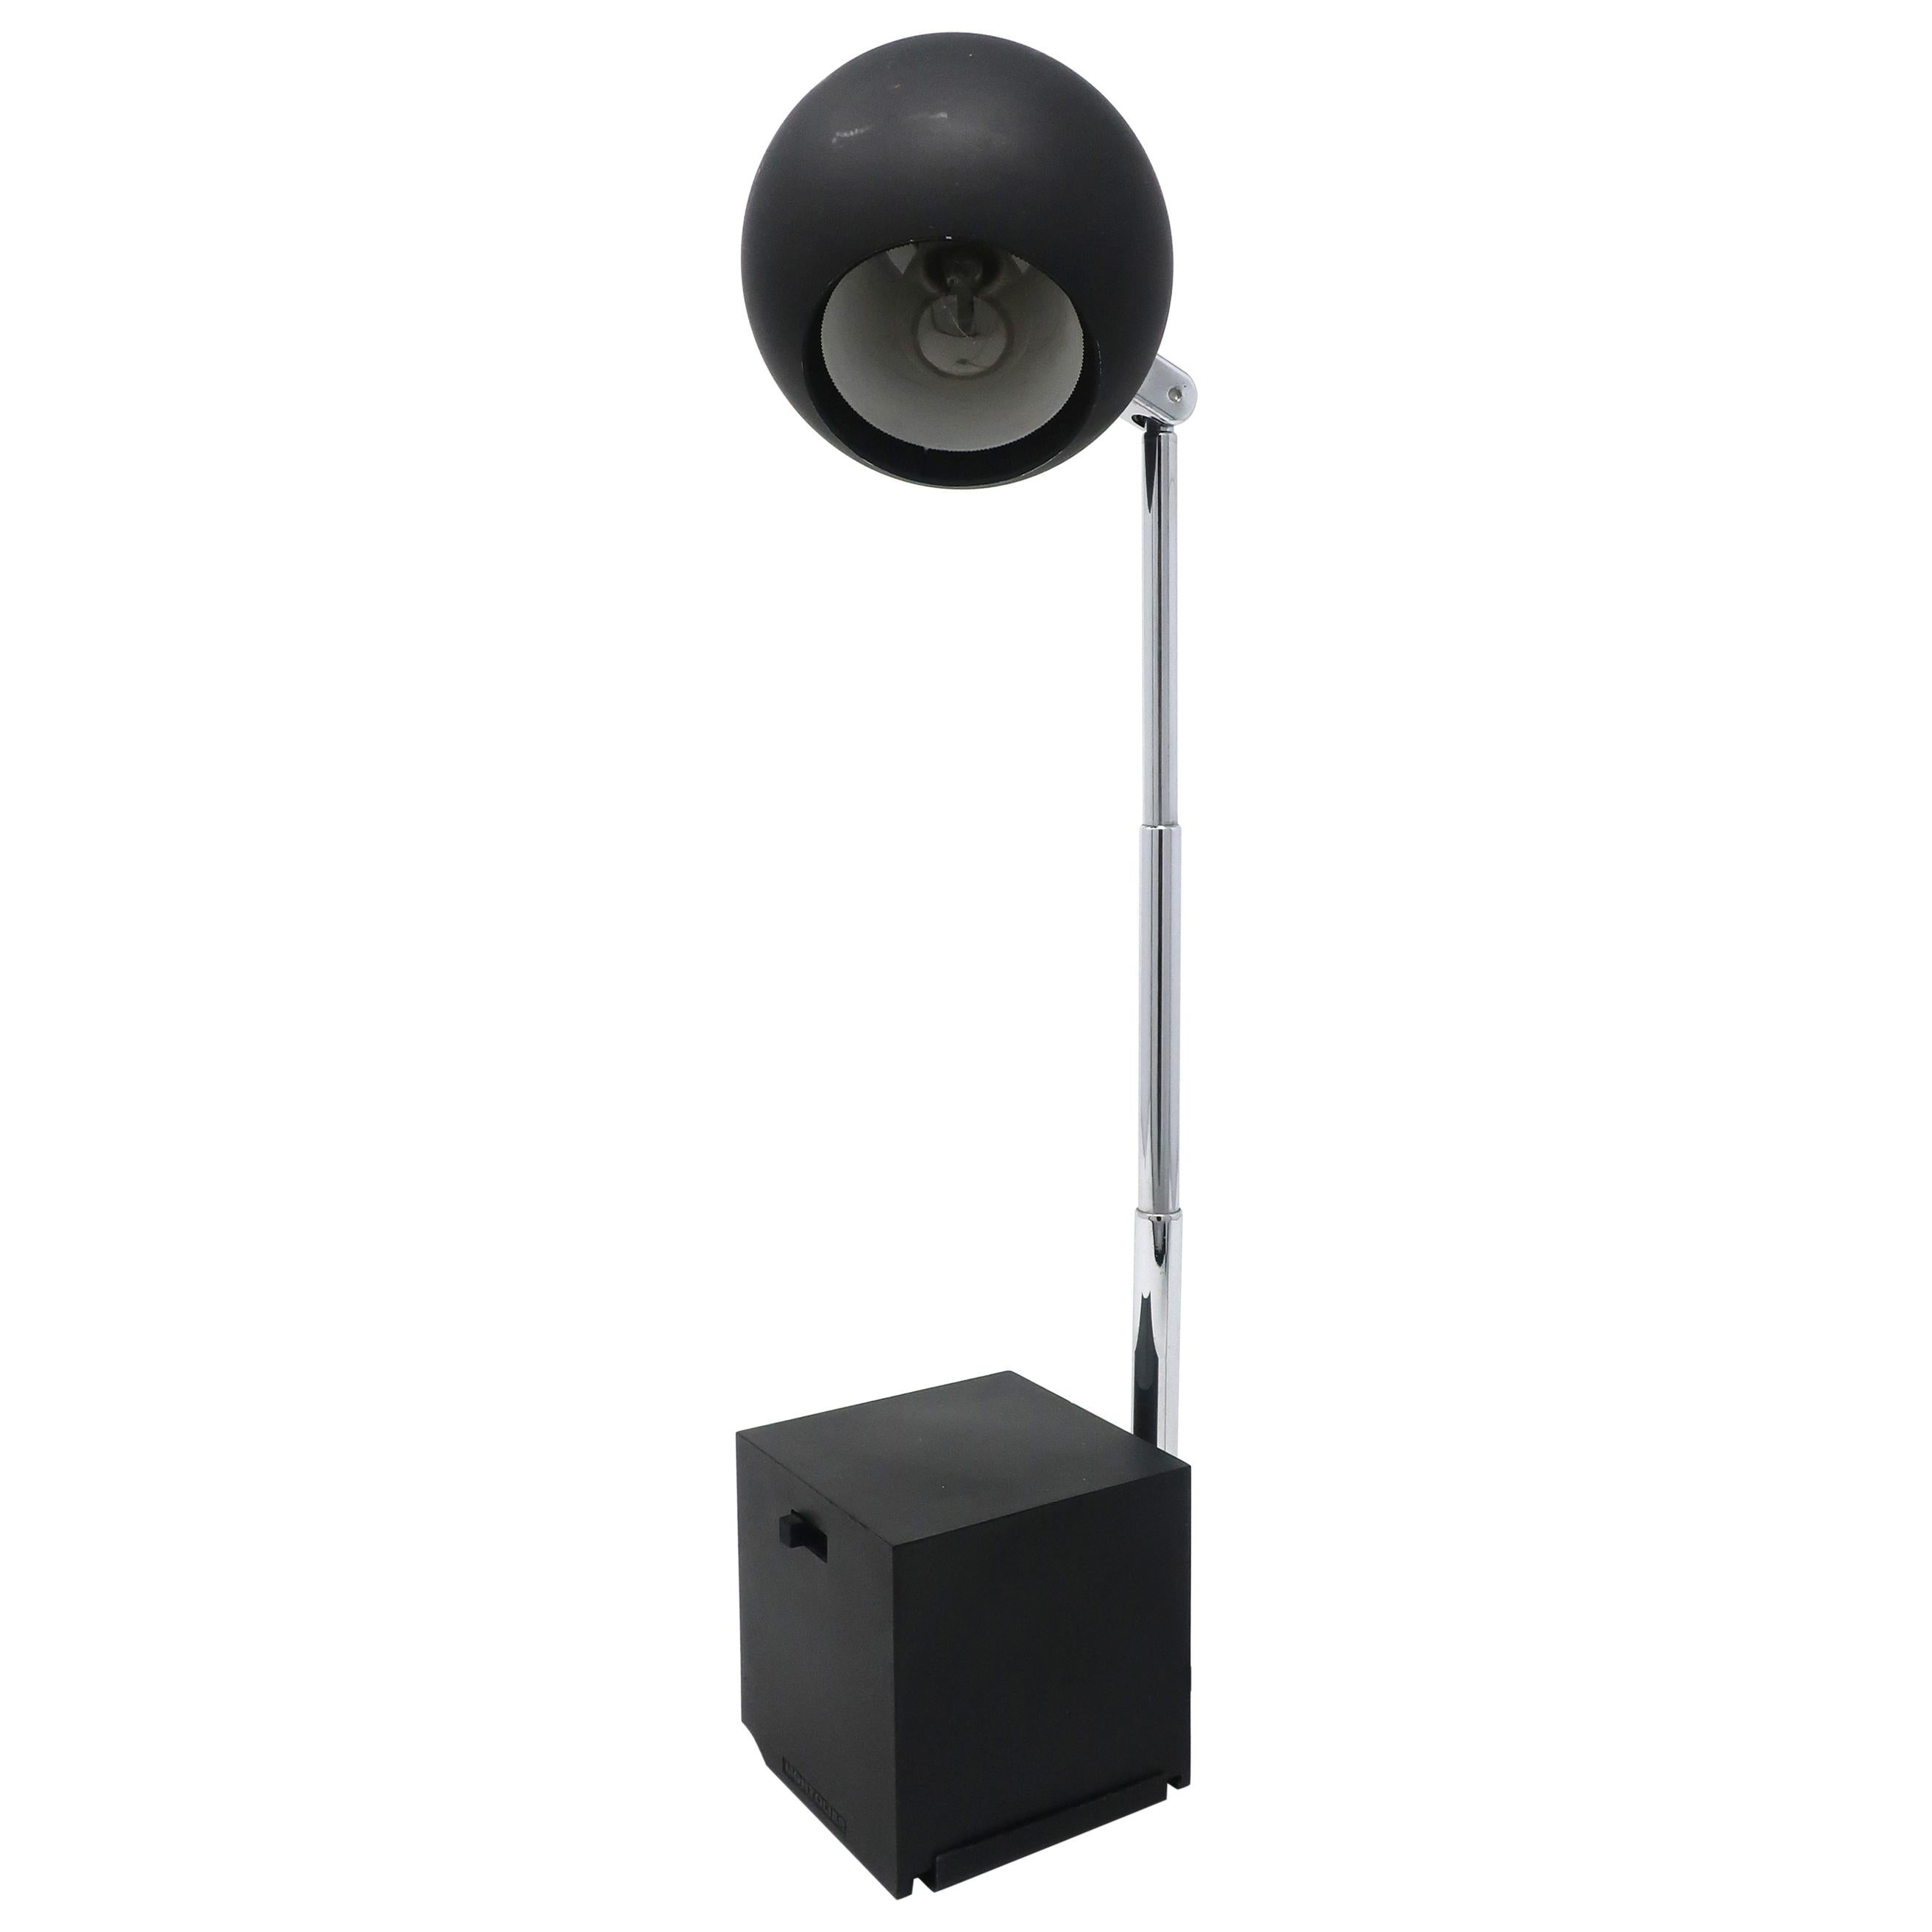 Black Lytegem Desk Lamp by Michael Lax for Lightolier